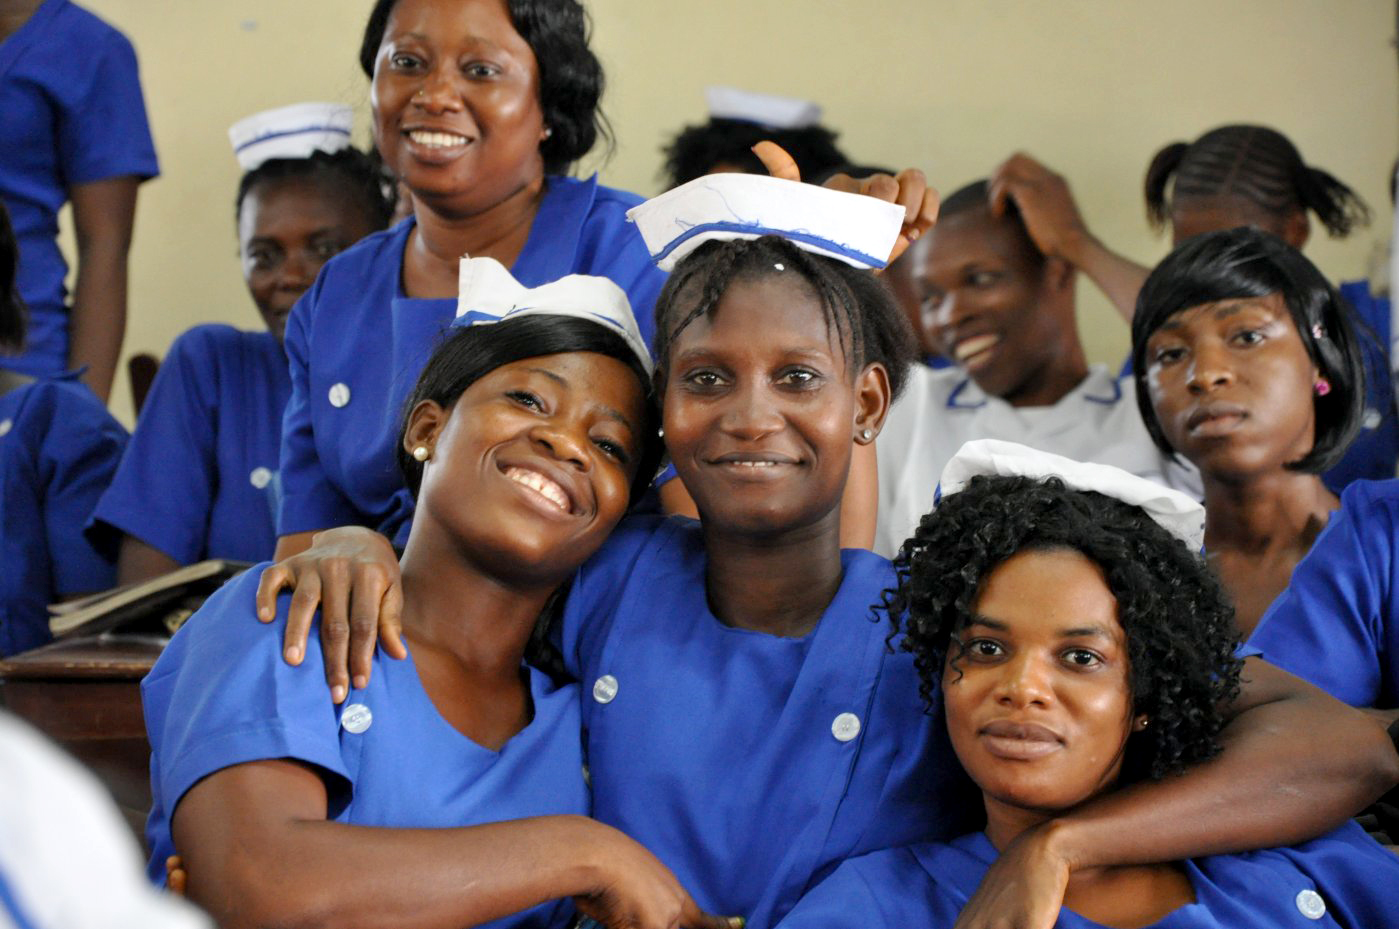 Women wearing nurses uniforms